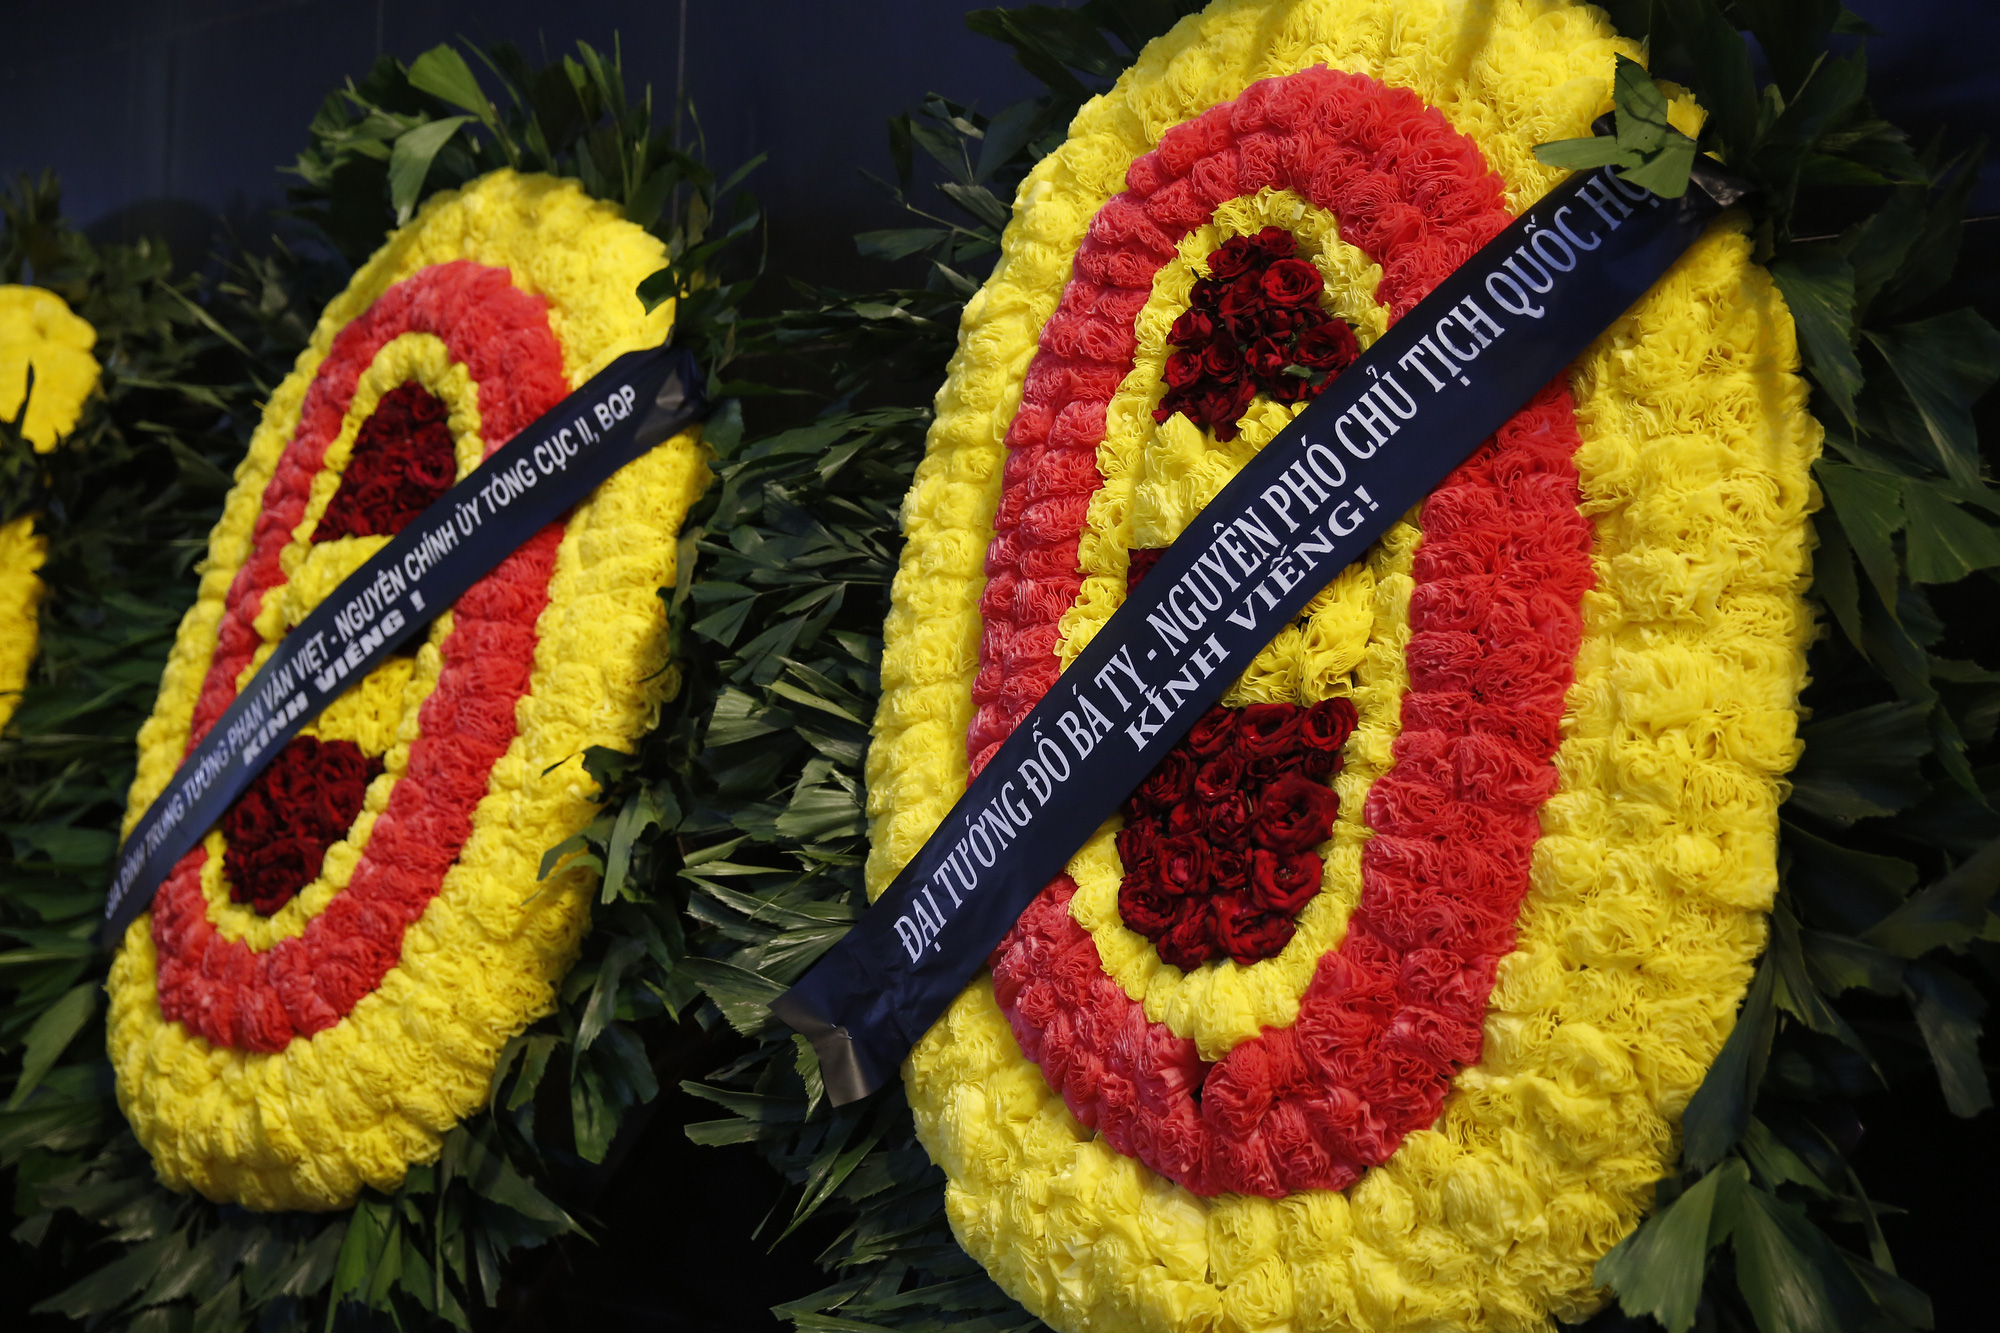 Lễ tang Đại tá Vũ Đình Hòe-Tiểu đoàn trưởng đánh đồi A1 suốt 38 ngày đêm trong chiến dịch Điện Biên Phủ - Ảnh 7.